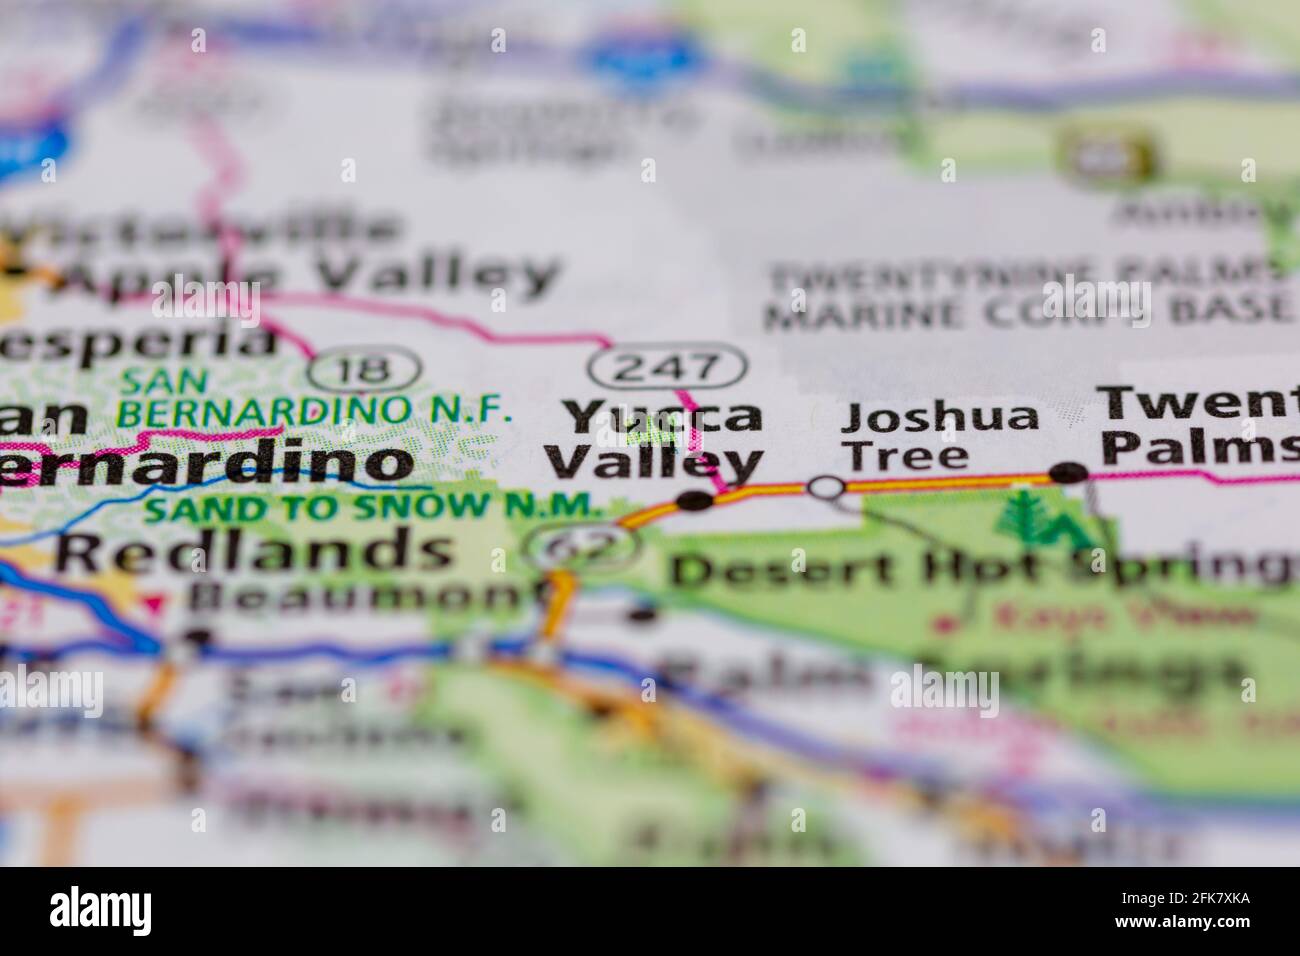 Yucca Valley California USA mostrato su una mappa geografica o. mappa stradale Foto Stock